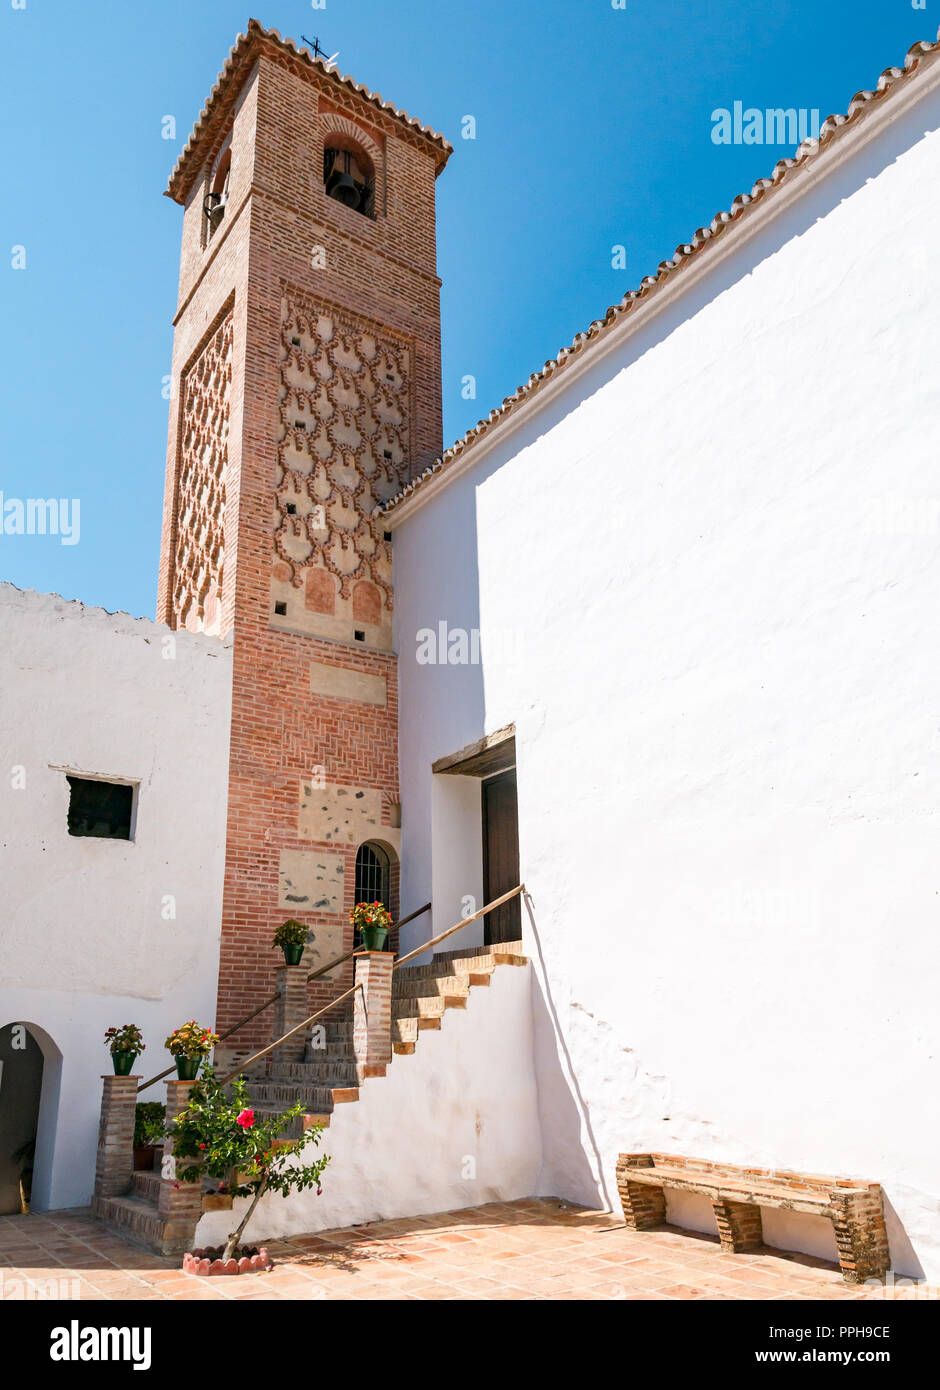 Saint Catholique Ana église avec clocher Minaret Arabe, ancien village Maure sur route mudéjar, Salares, Axarquía, Andalousie, Espagne Banque D'Images